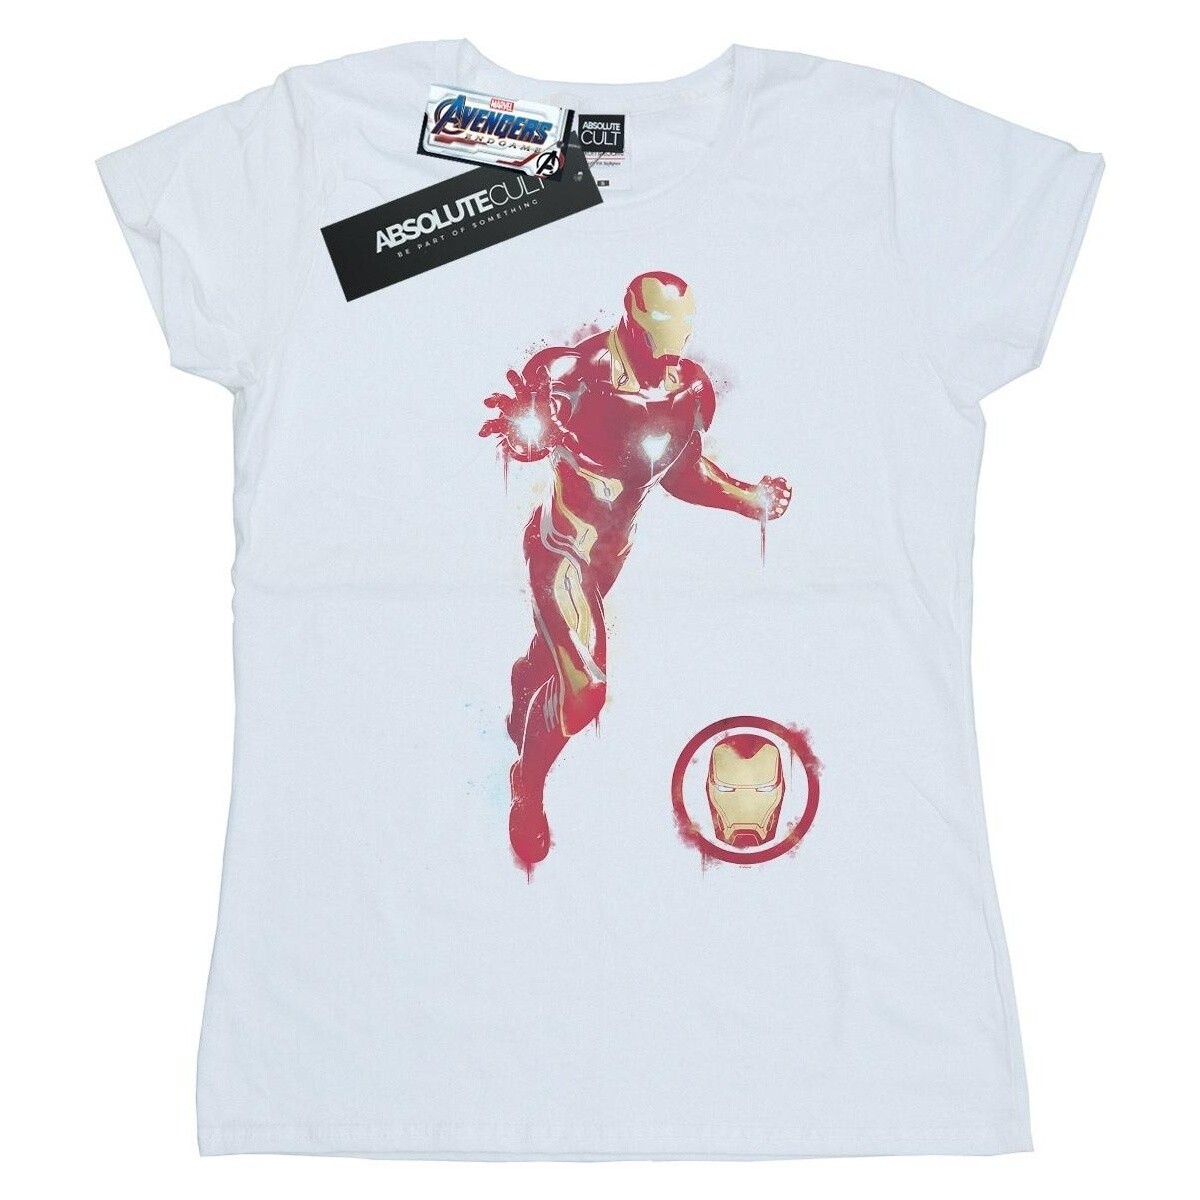 Vêtements Femme T-shirts manches longues Marvel Avengers Endgame Painted Iron Man Blanc